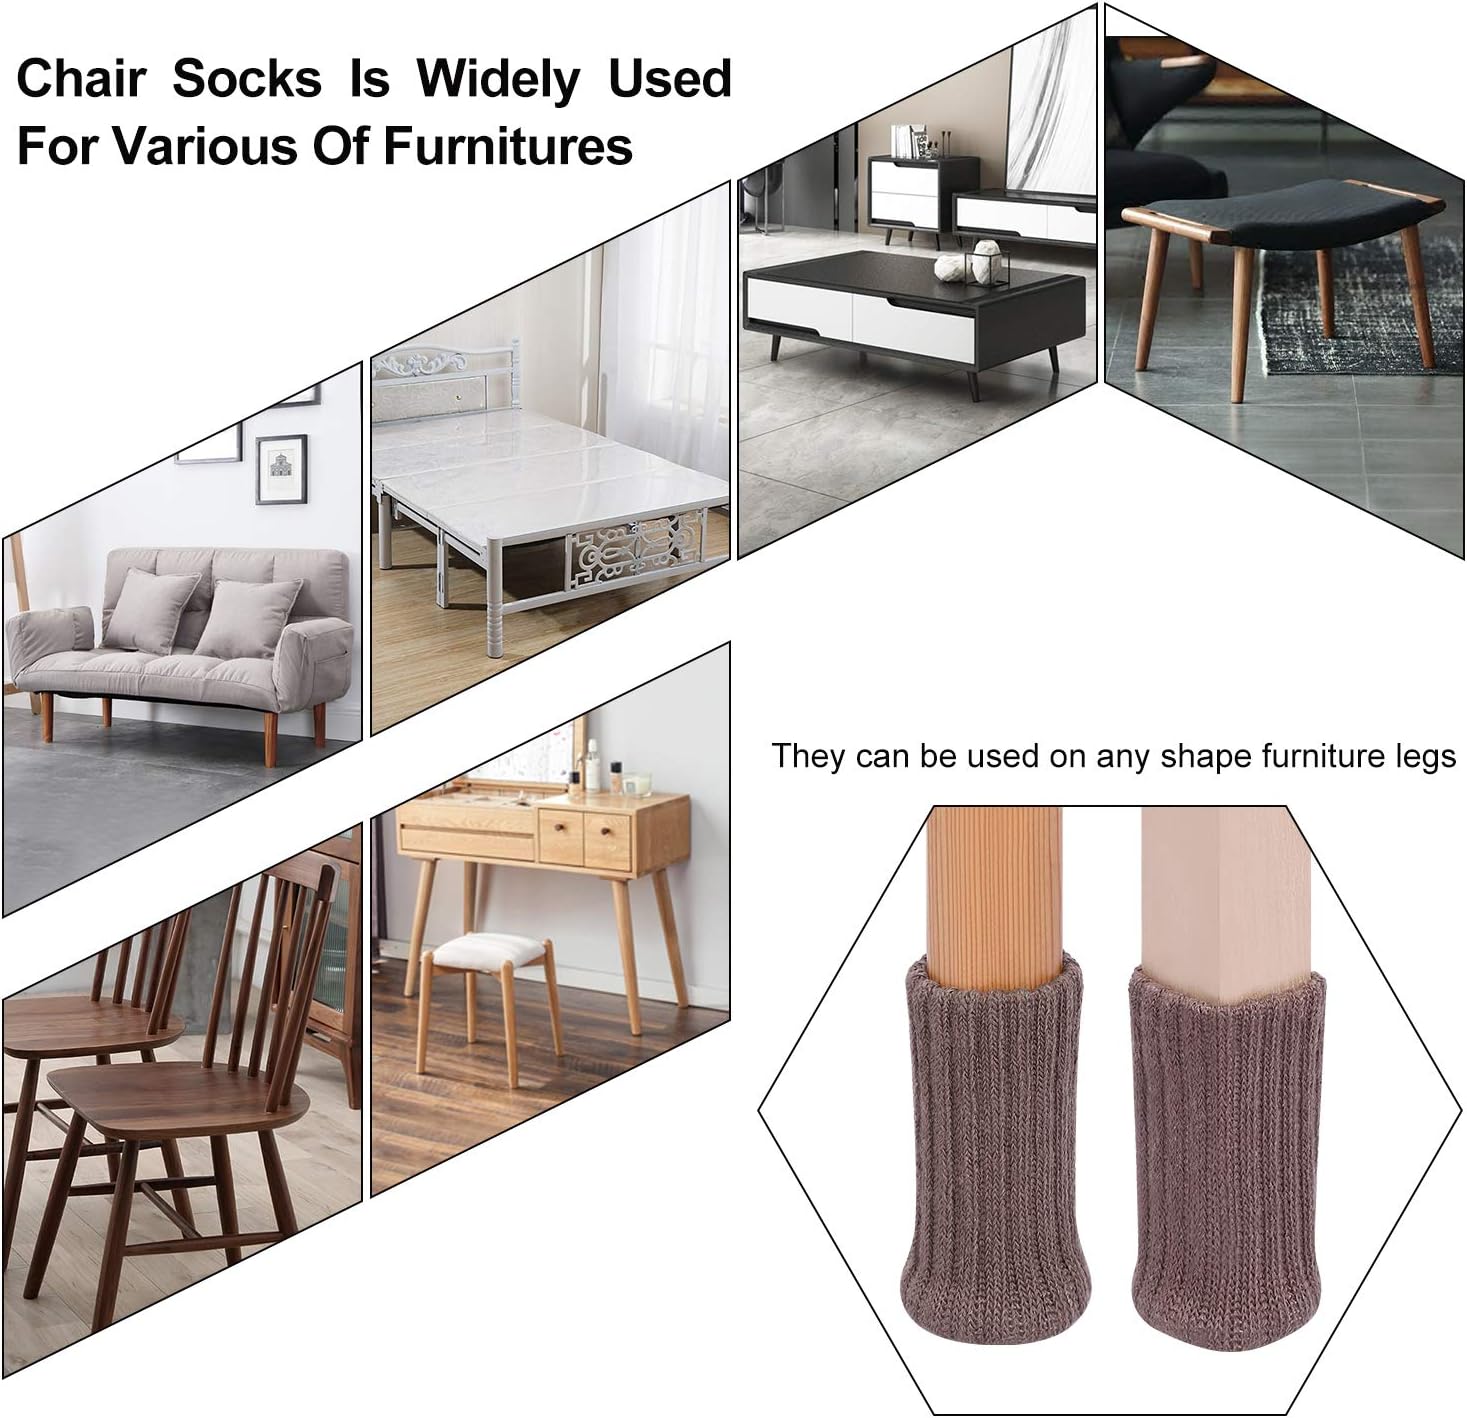  Calcetines de punto para patas de silla, calcetines de alta  elasticidad para patas de silla, calcetines de muebles para patas de  muebles, calcetines de silla para almohadillas de muebles, rojo ladrillo